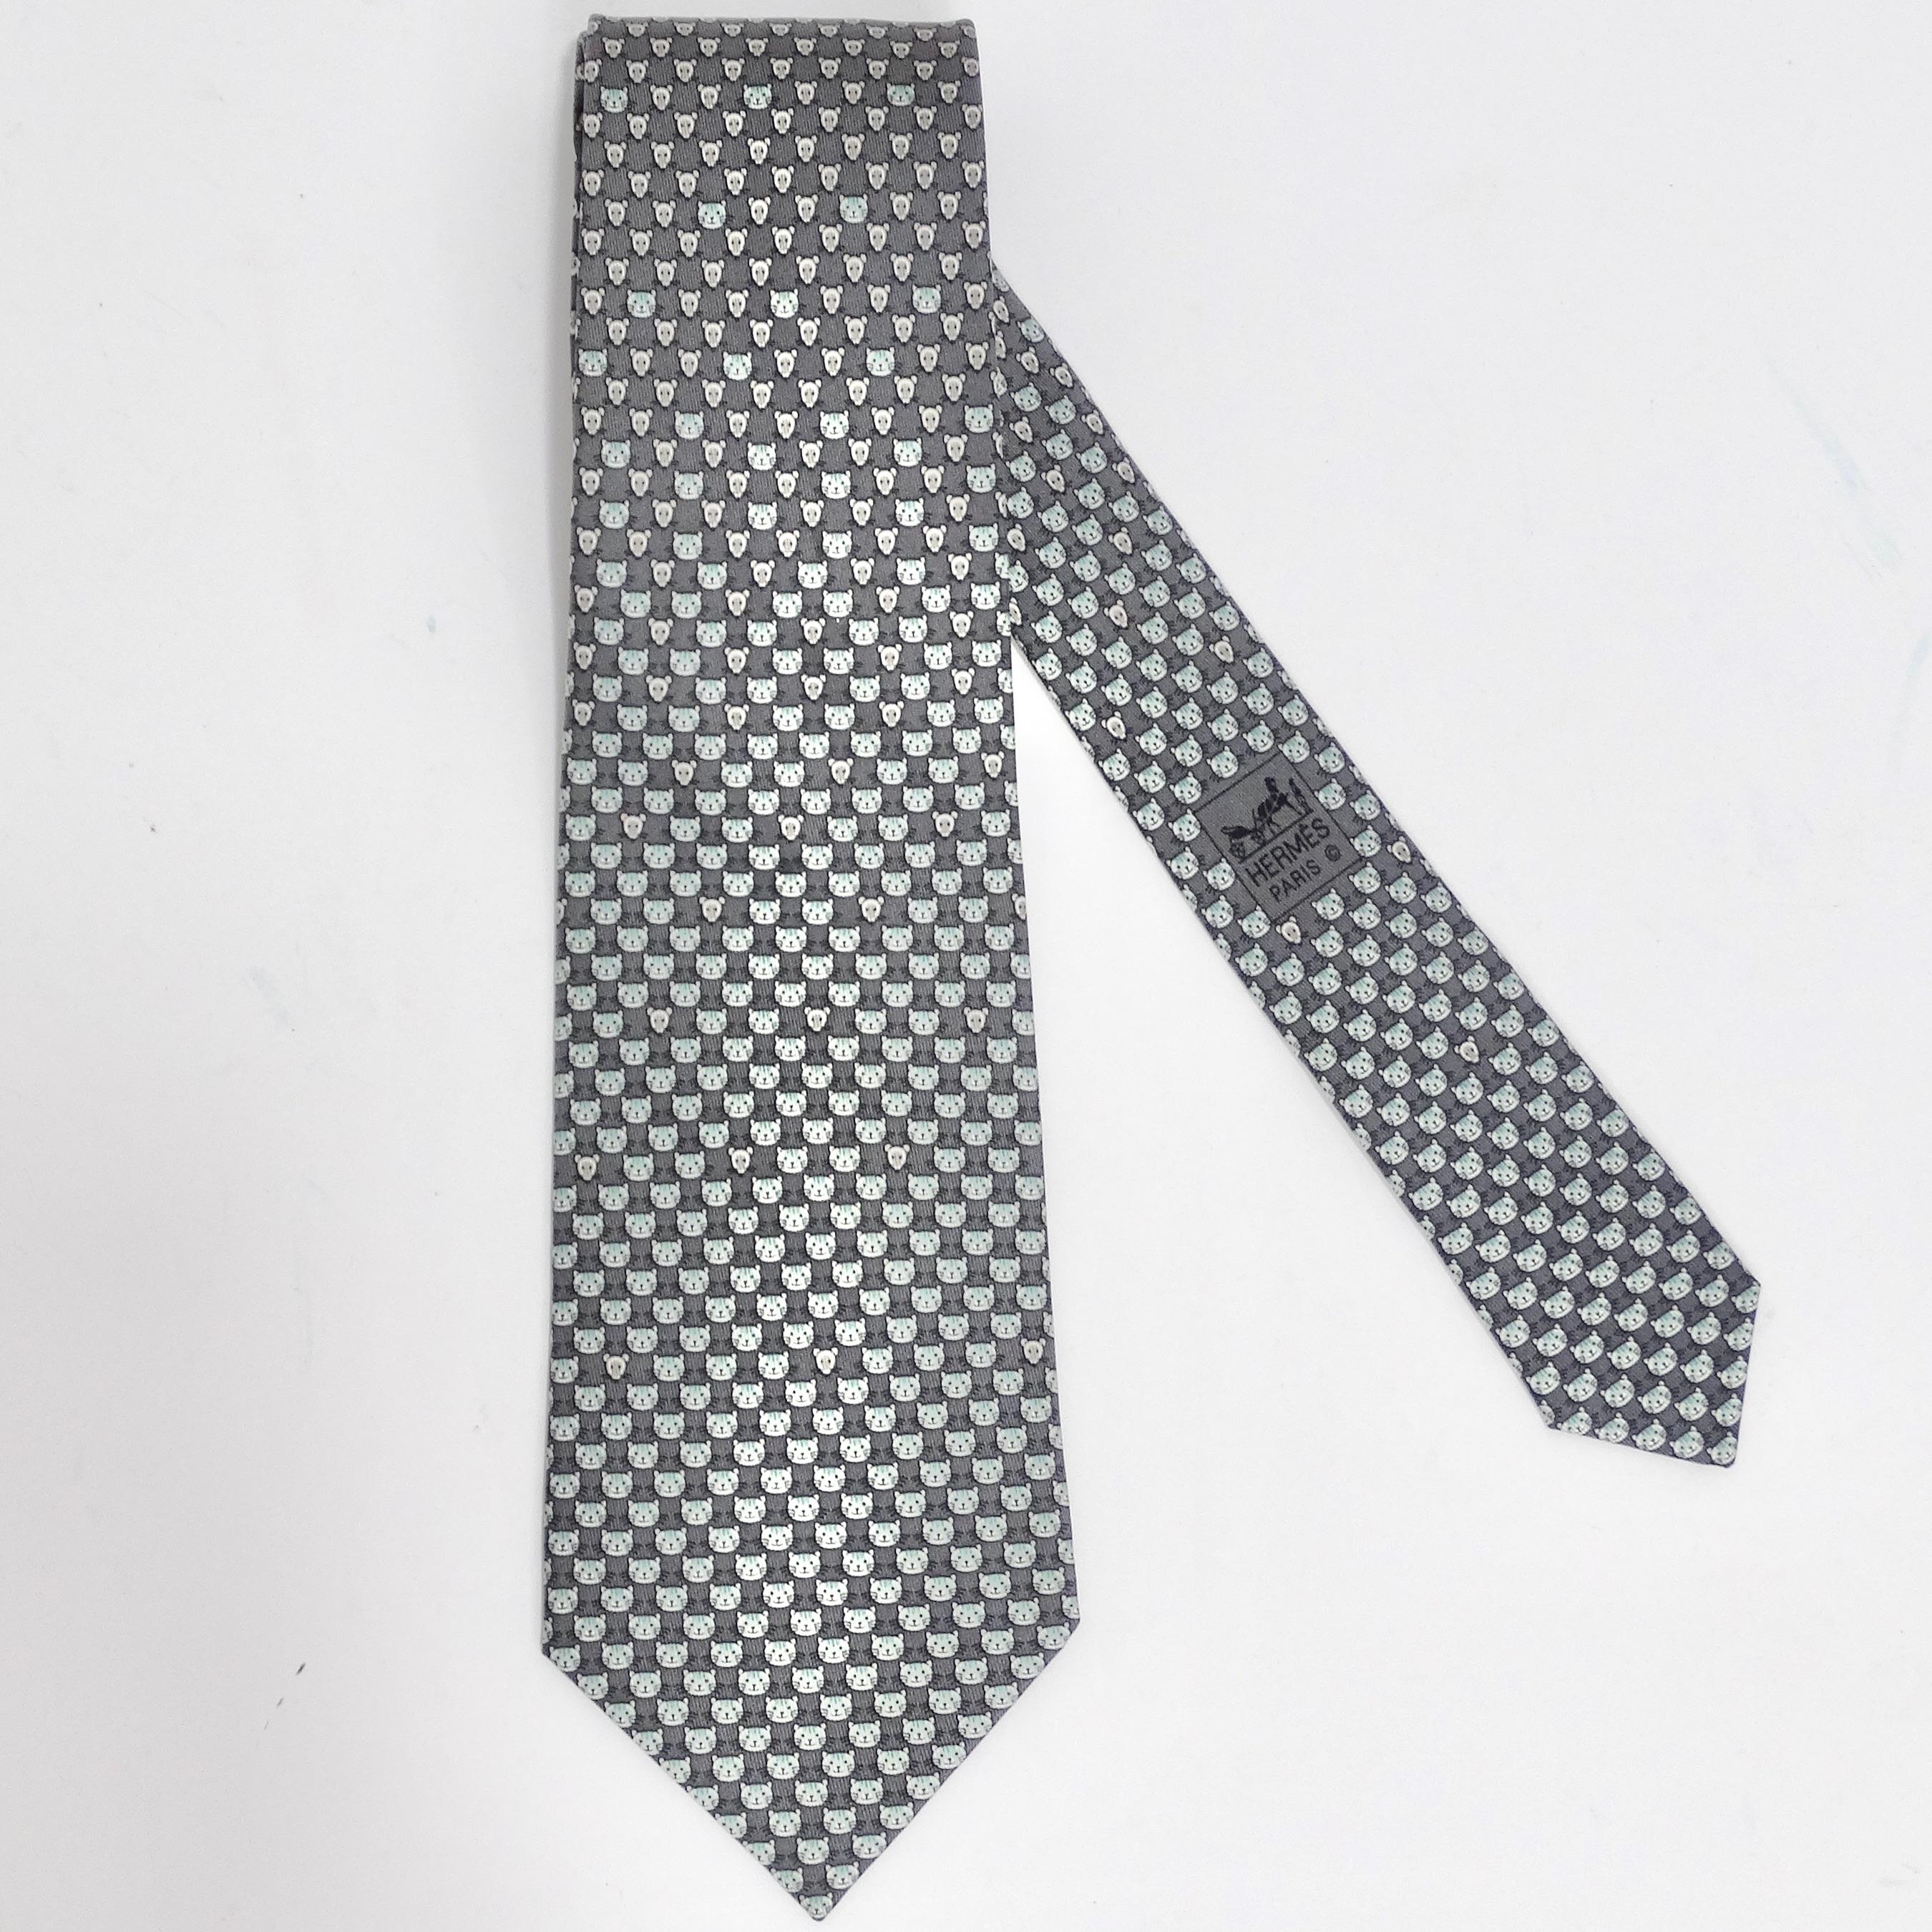 Voici la cravate à imprimé chat Hermes des années 1990 - un classique de la garde-robe avec une touche de charme ! Cette cravate allie harmonieusement l'élégance intemporelle à une touche de fantaisie féline. Confectionné dans une soie polyvalente